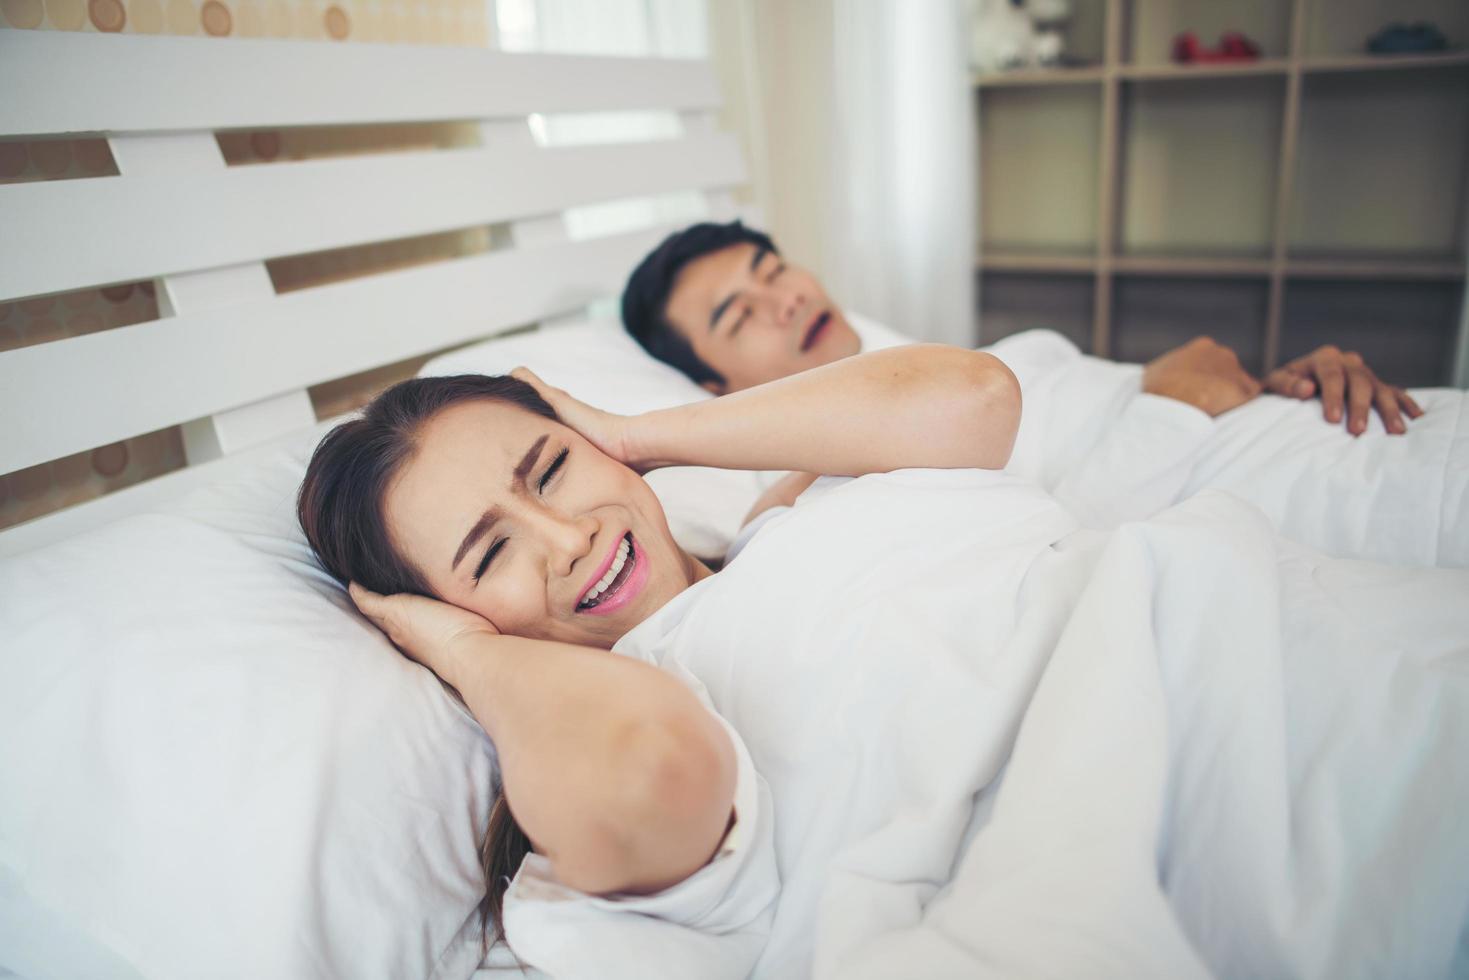 slapende vrouw blokkeert oren met man snurken in bed foto